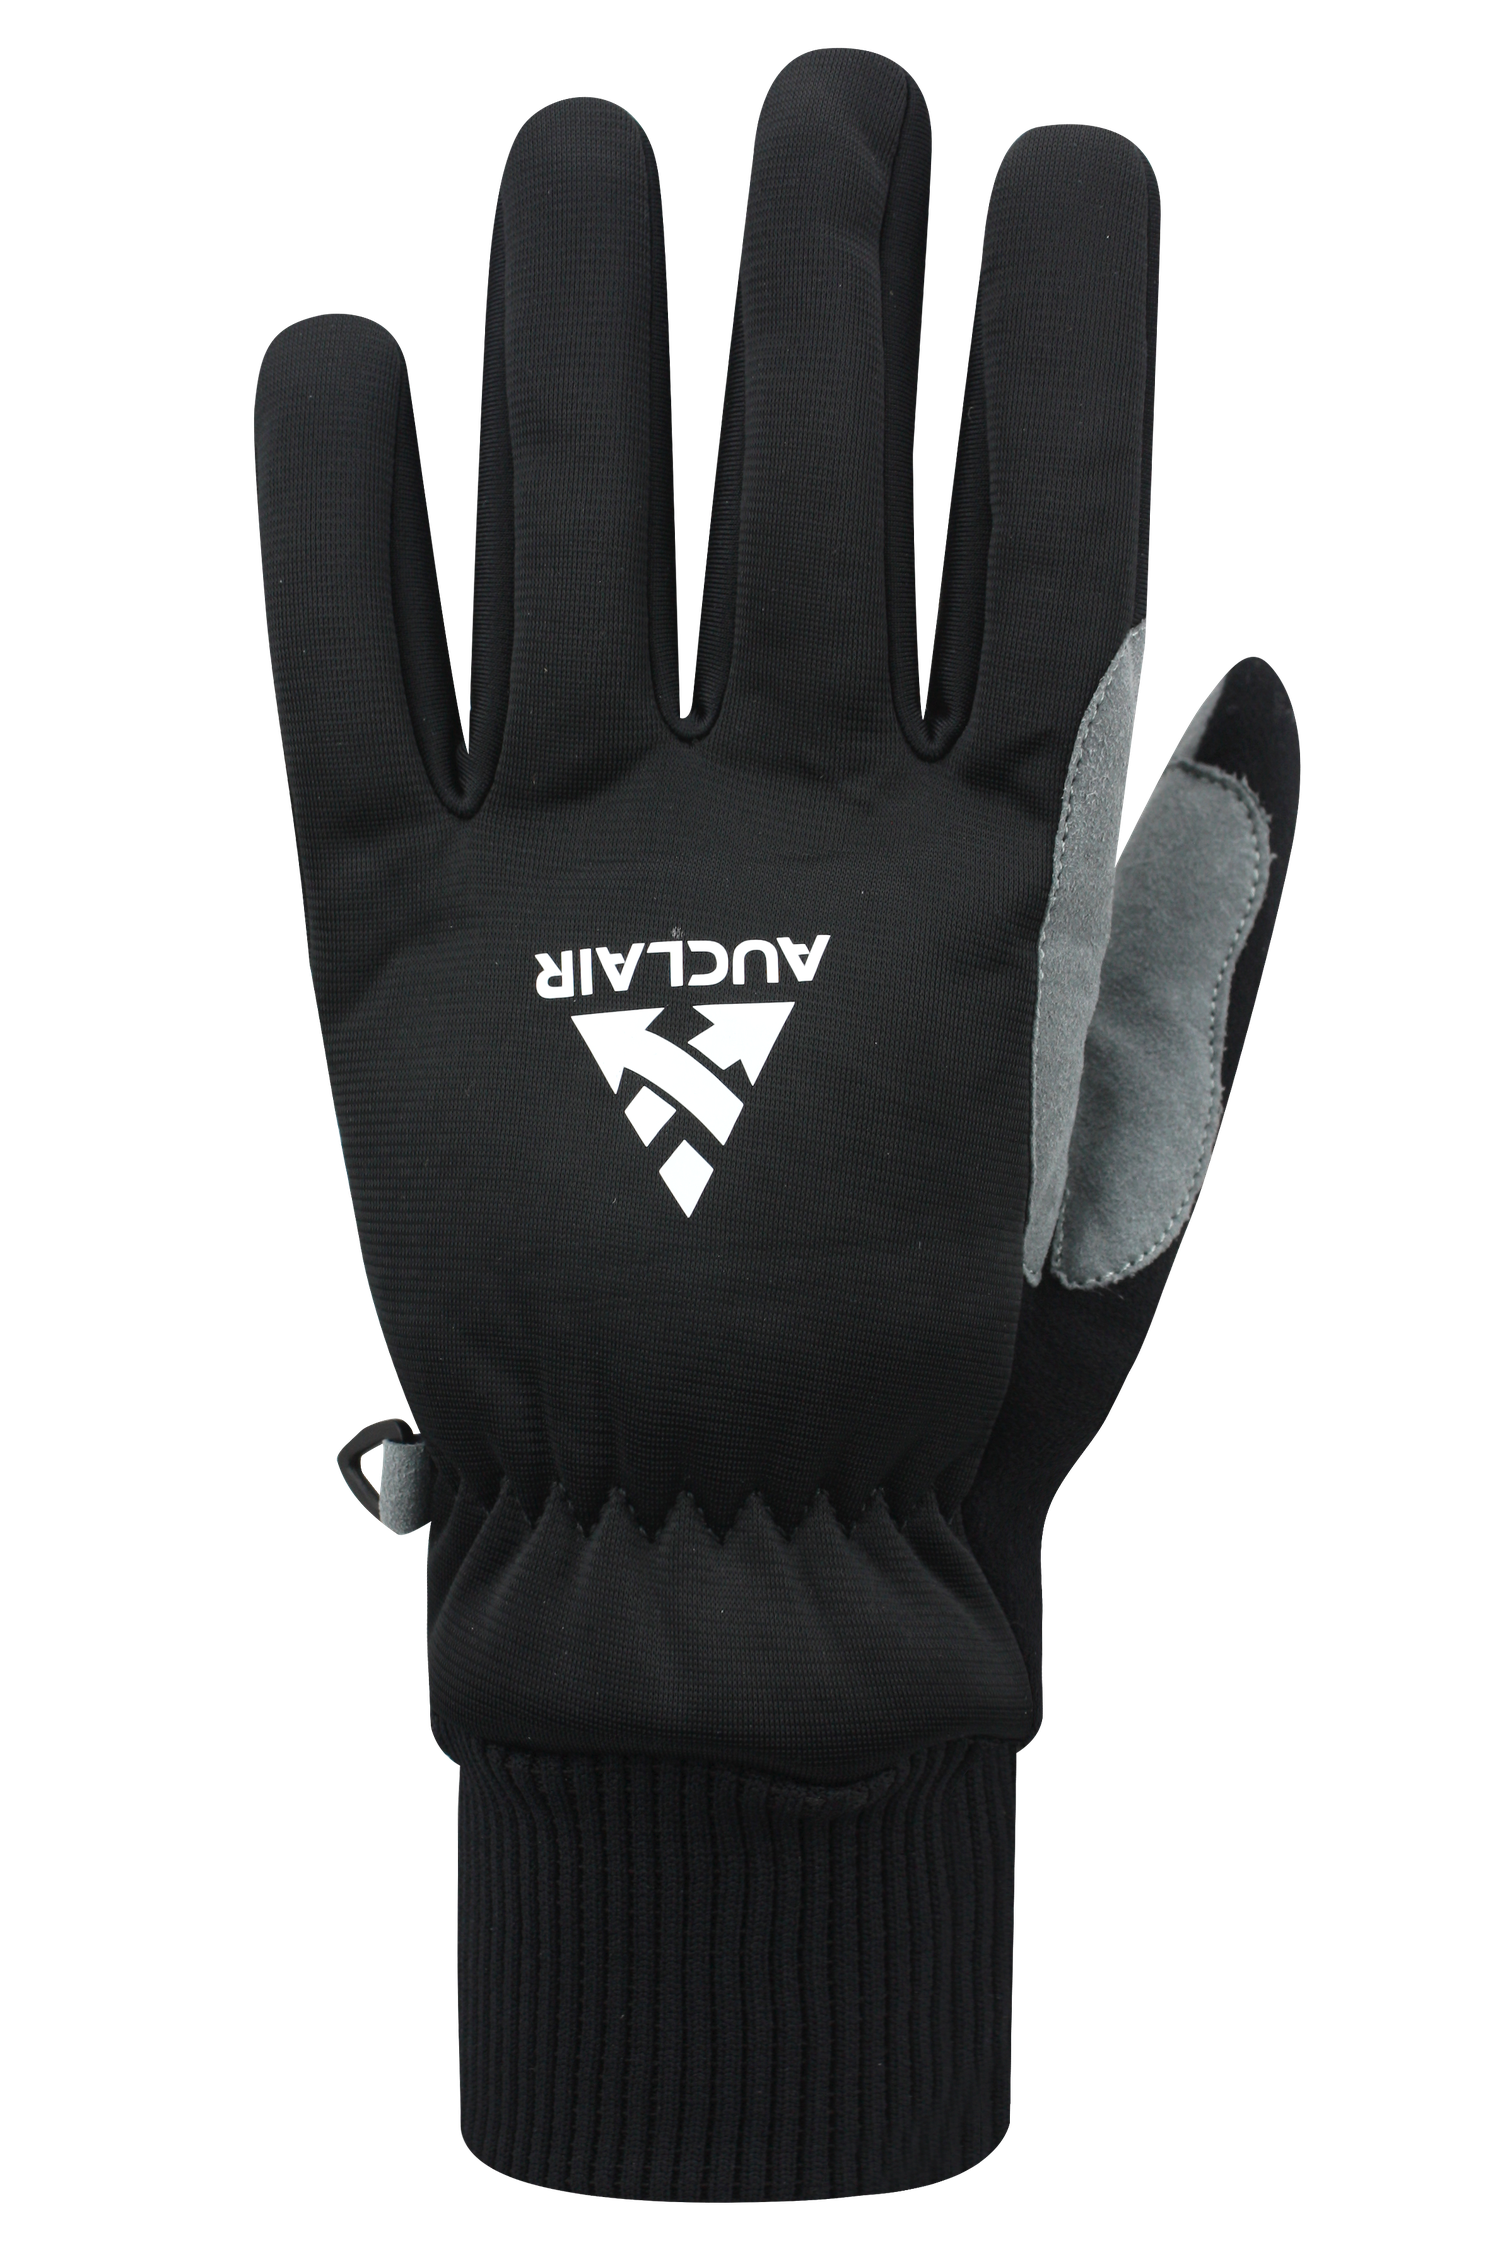 Capreol 2 Gloves - Adult, Black